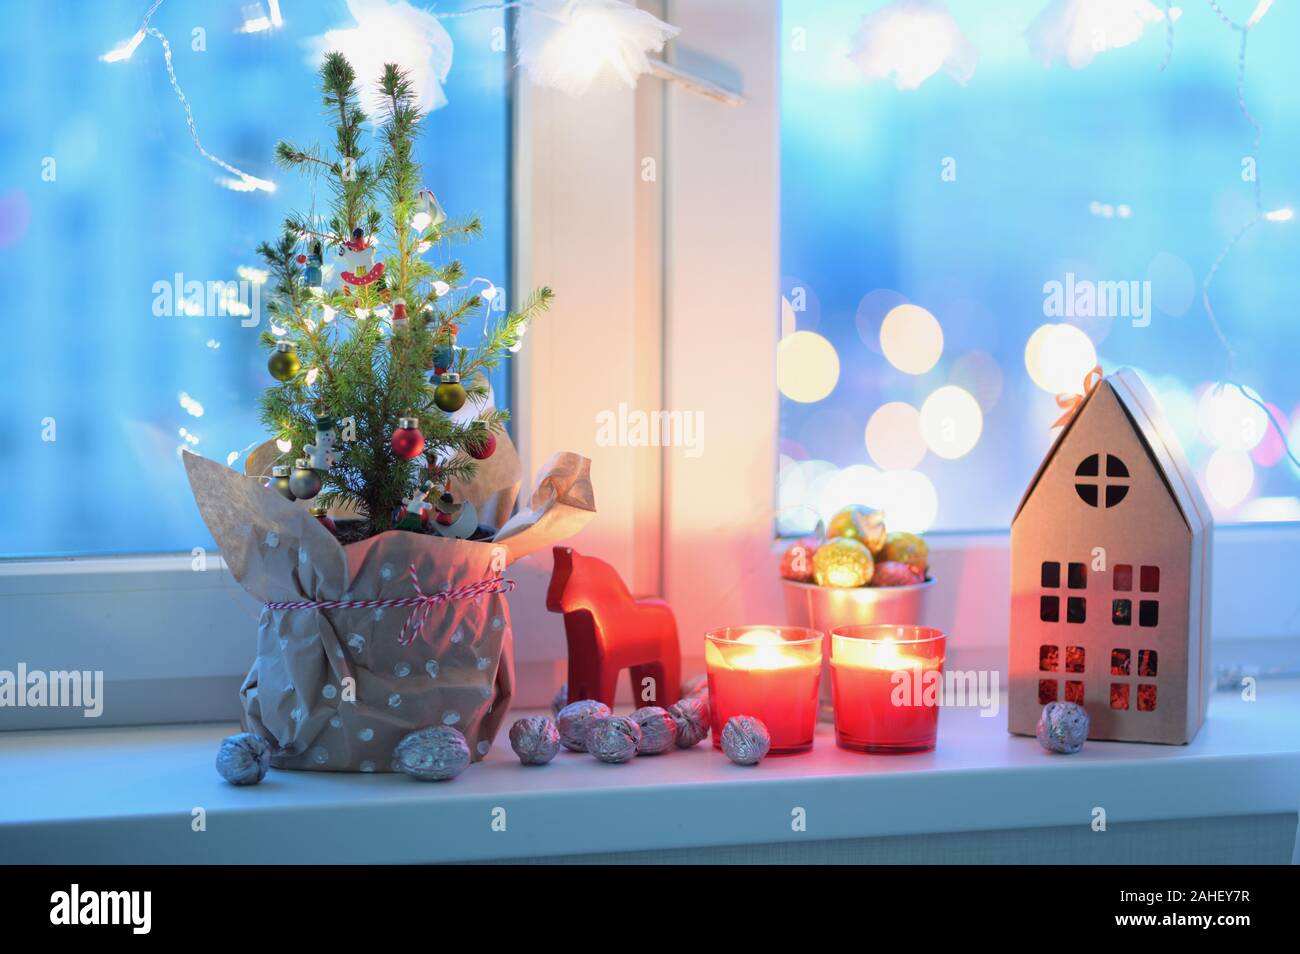 Arbre de Noël, Décorations de Noël, de bougies et de cadeaux de Noël sur un rebord de fenêtre Banque D'Images